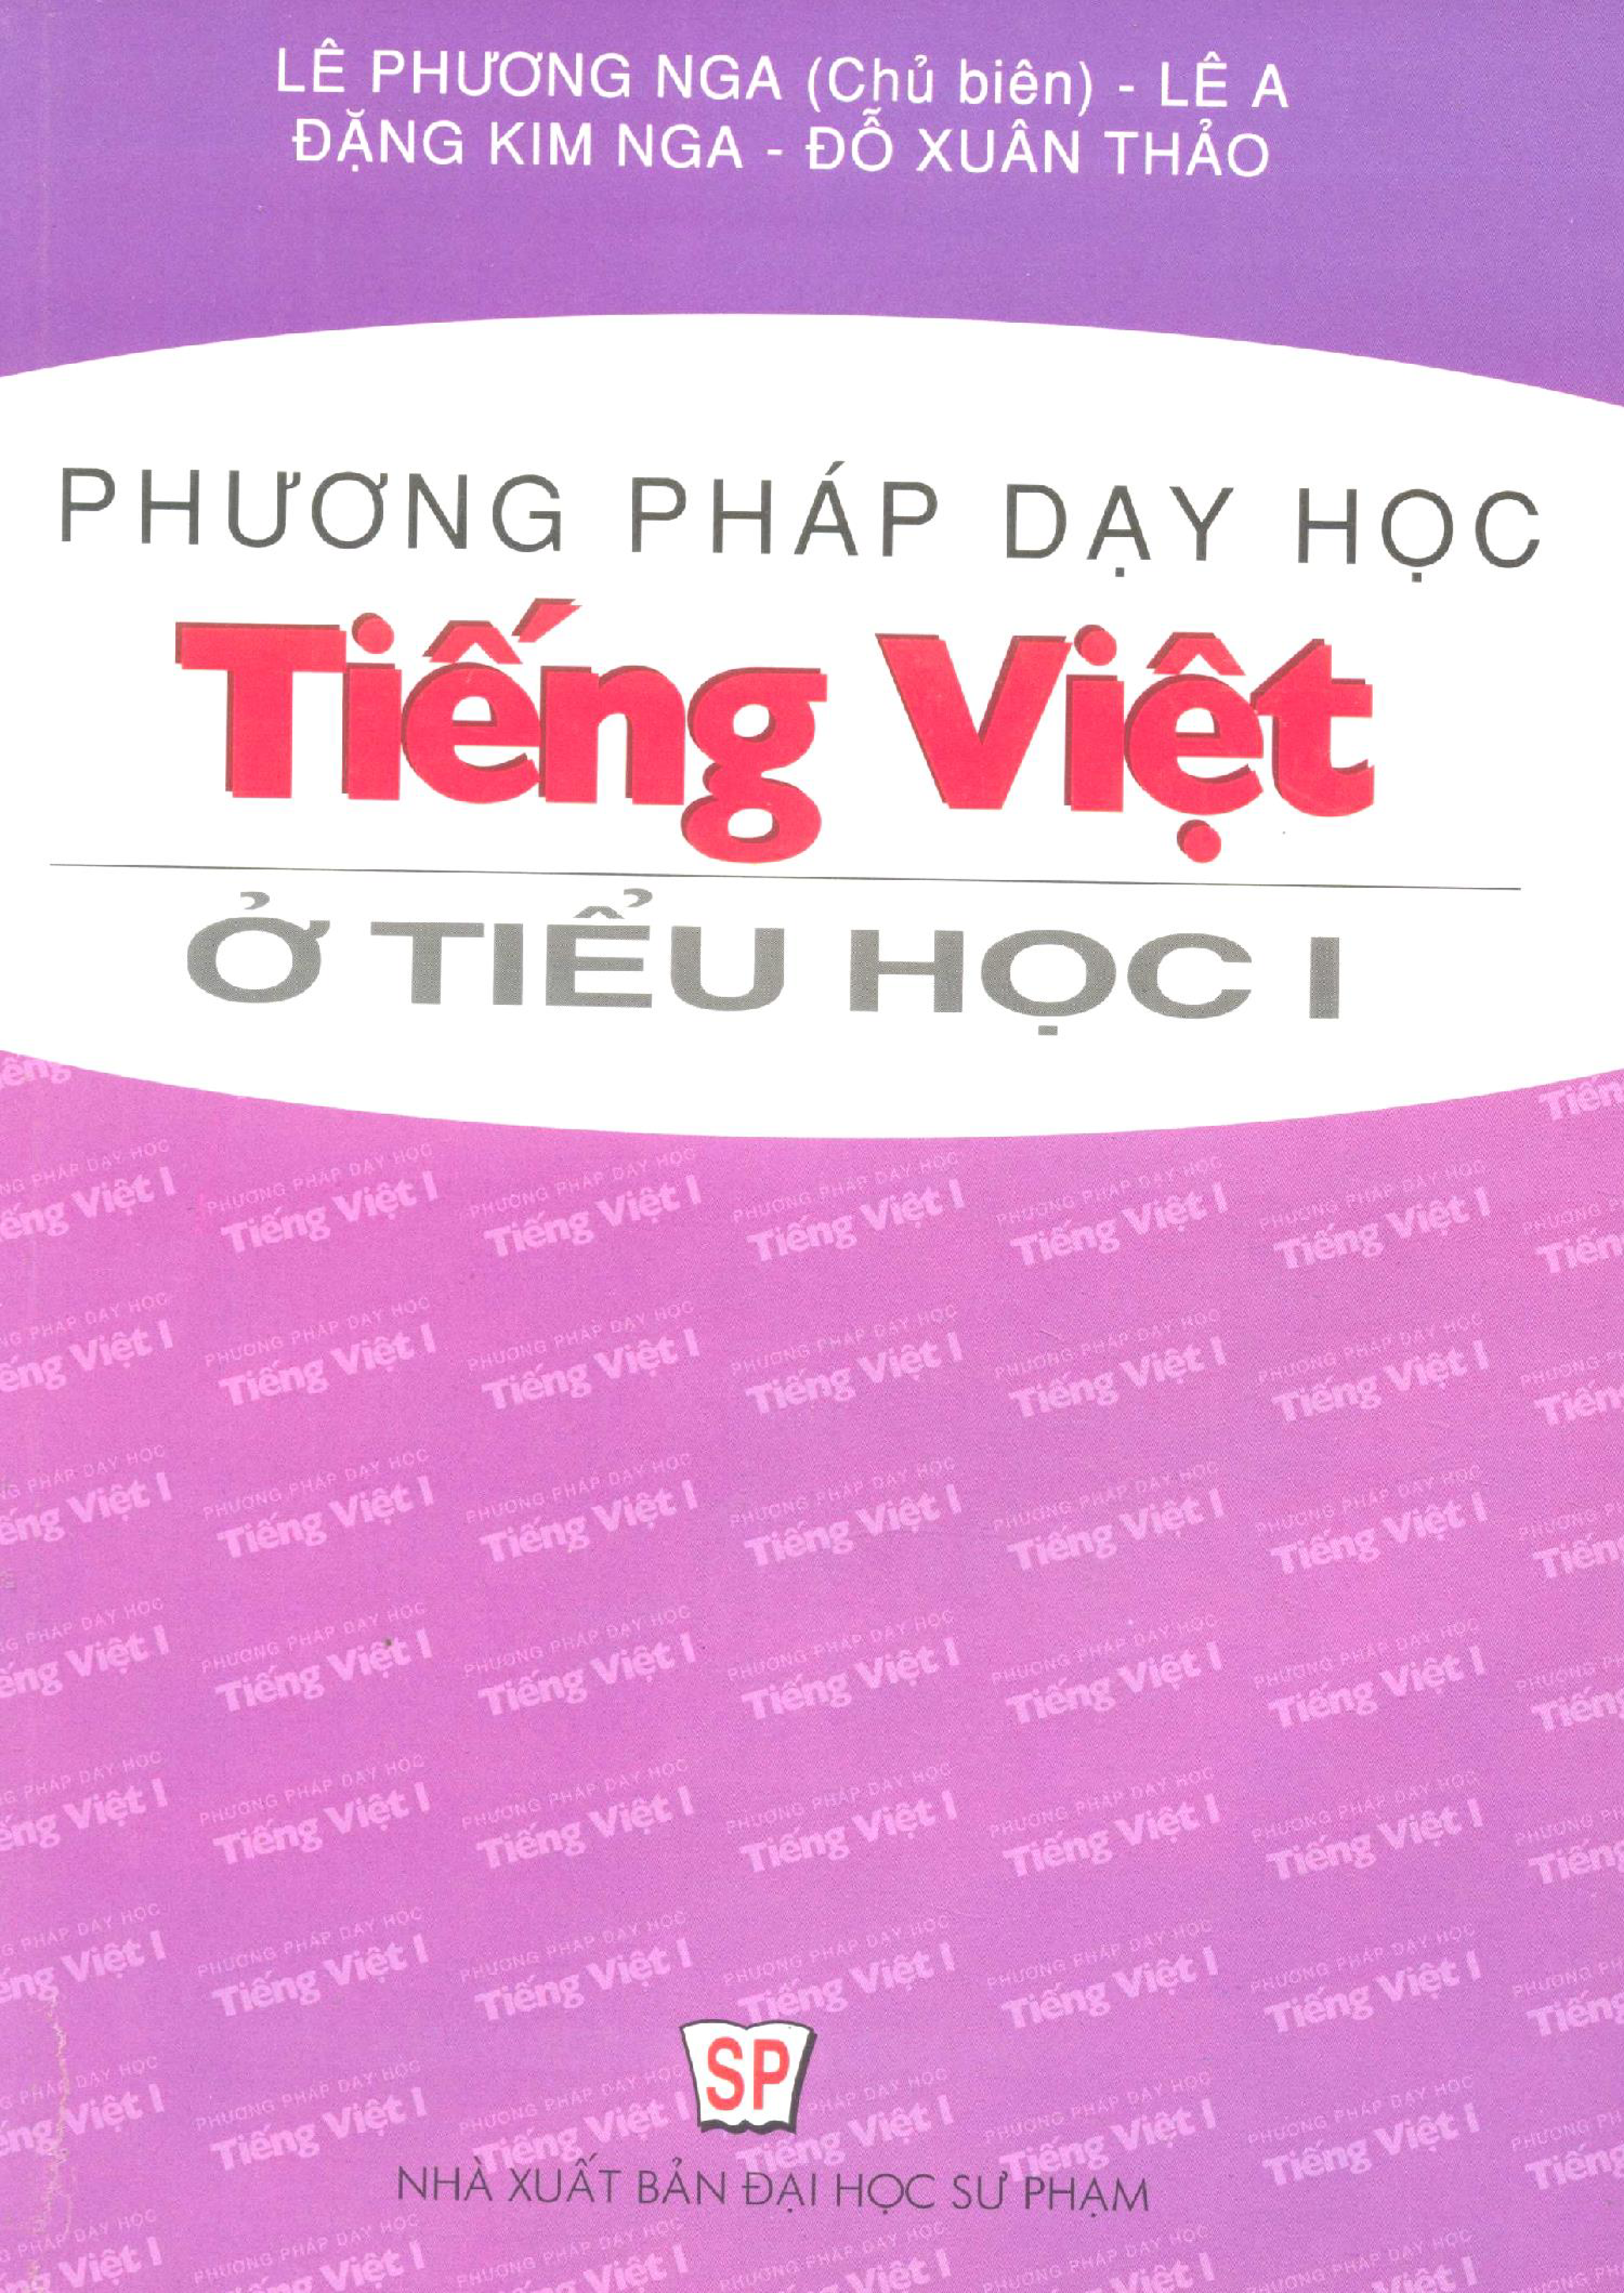 Phương pháp dạy học tiếng Việt ở tiểu học: Tập 1